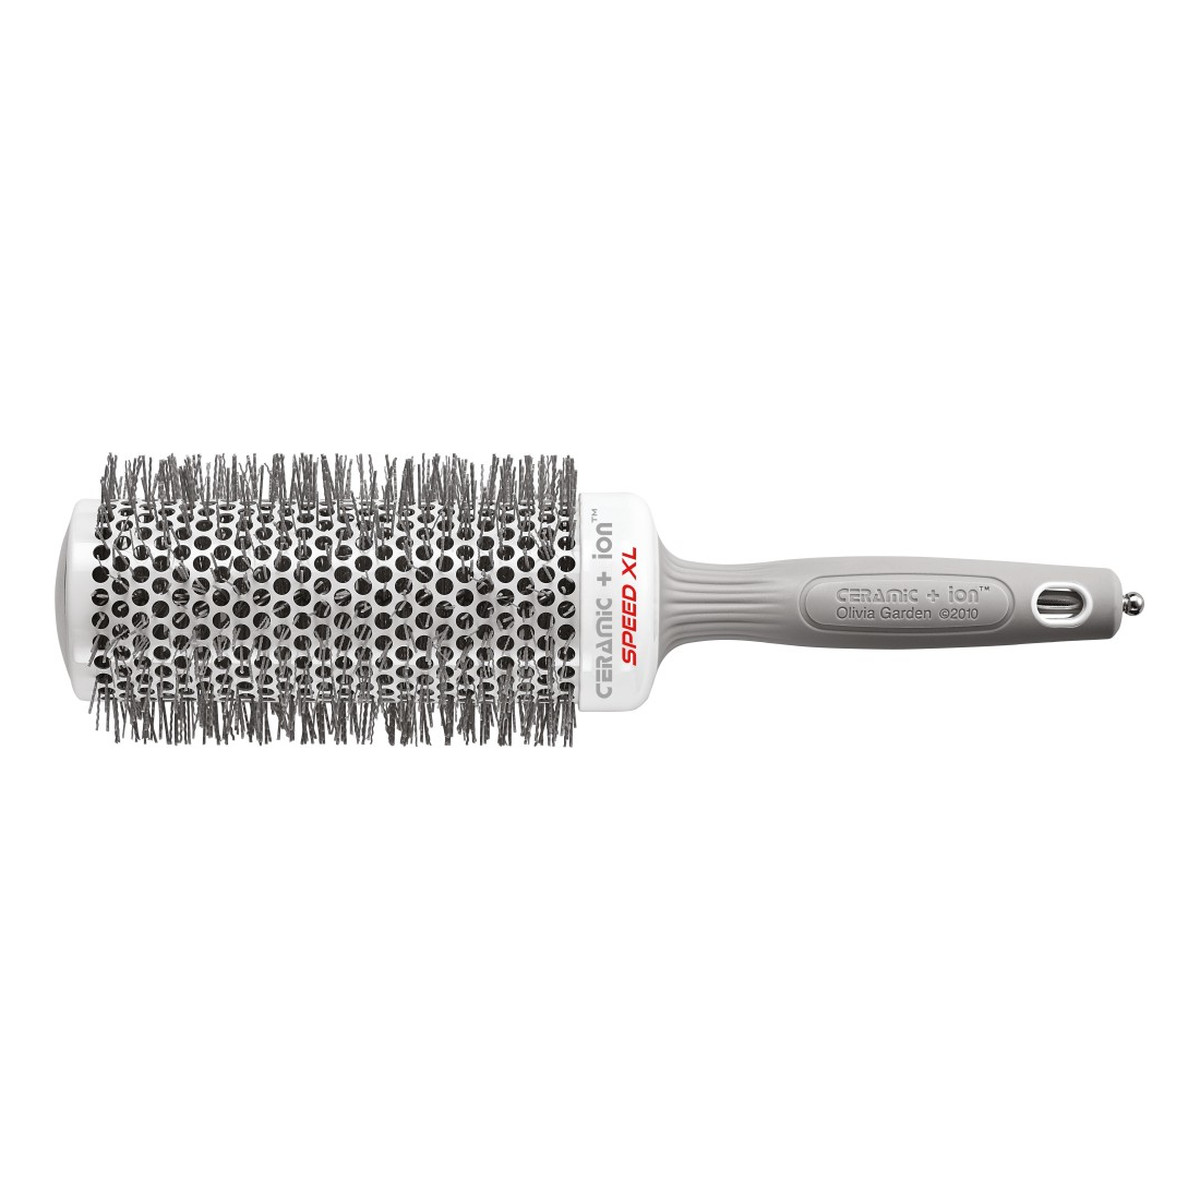 Olivia Garden Ceramic+Ion Thermal Hairbrush Speed szczotka do włosów XL T55